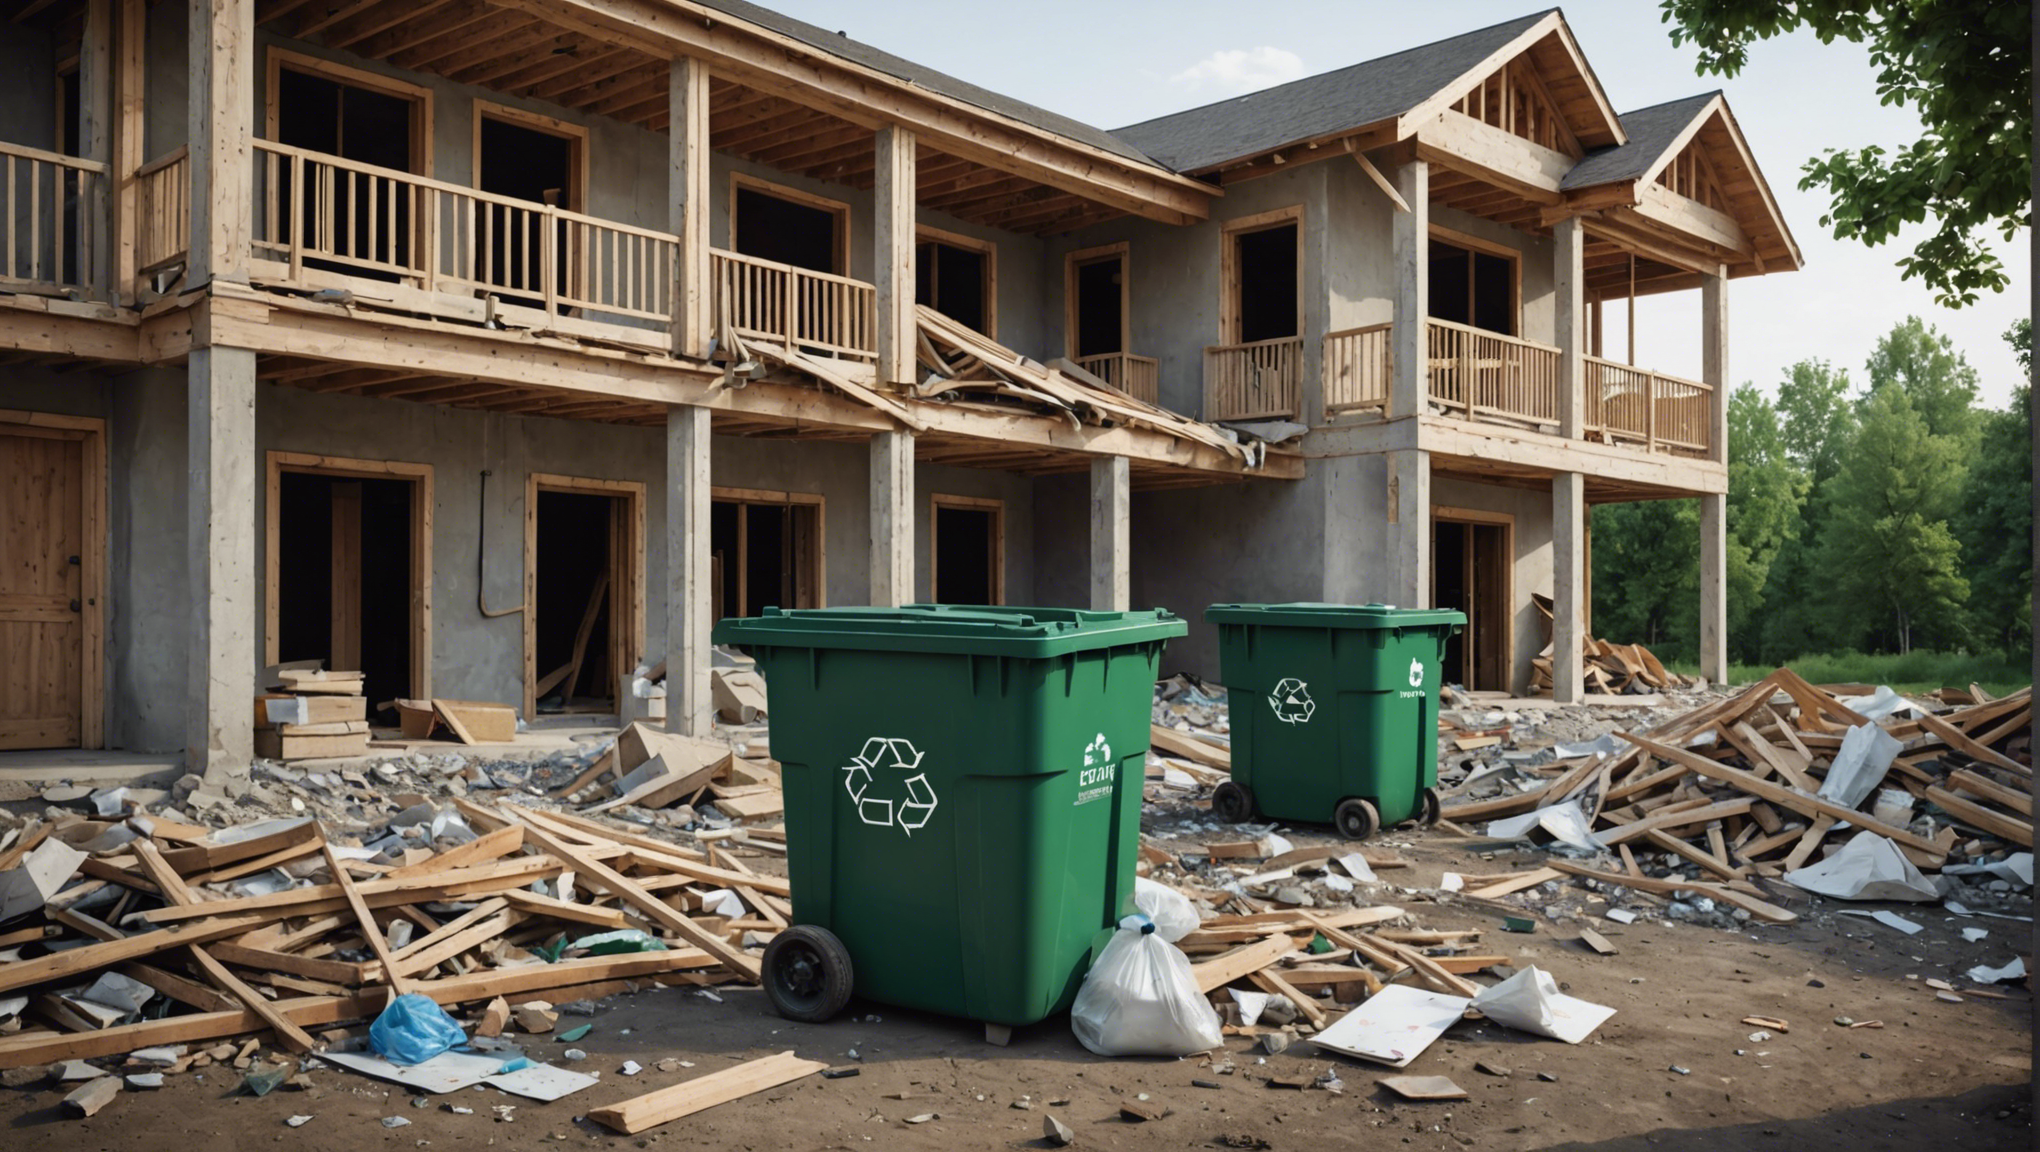 découvrez nos conseils pour optimiser la gestion des déchets lors de la construction de votre maison. réduisez votre empreinte environnementale tout en respectant les normes et réglementations en vigueur.